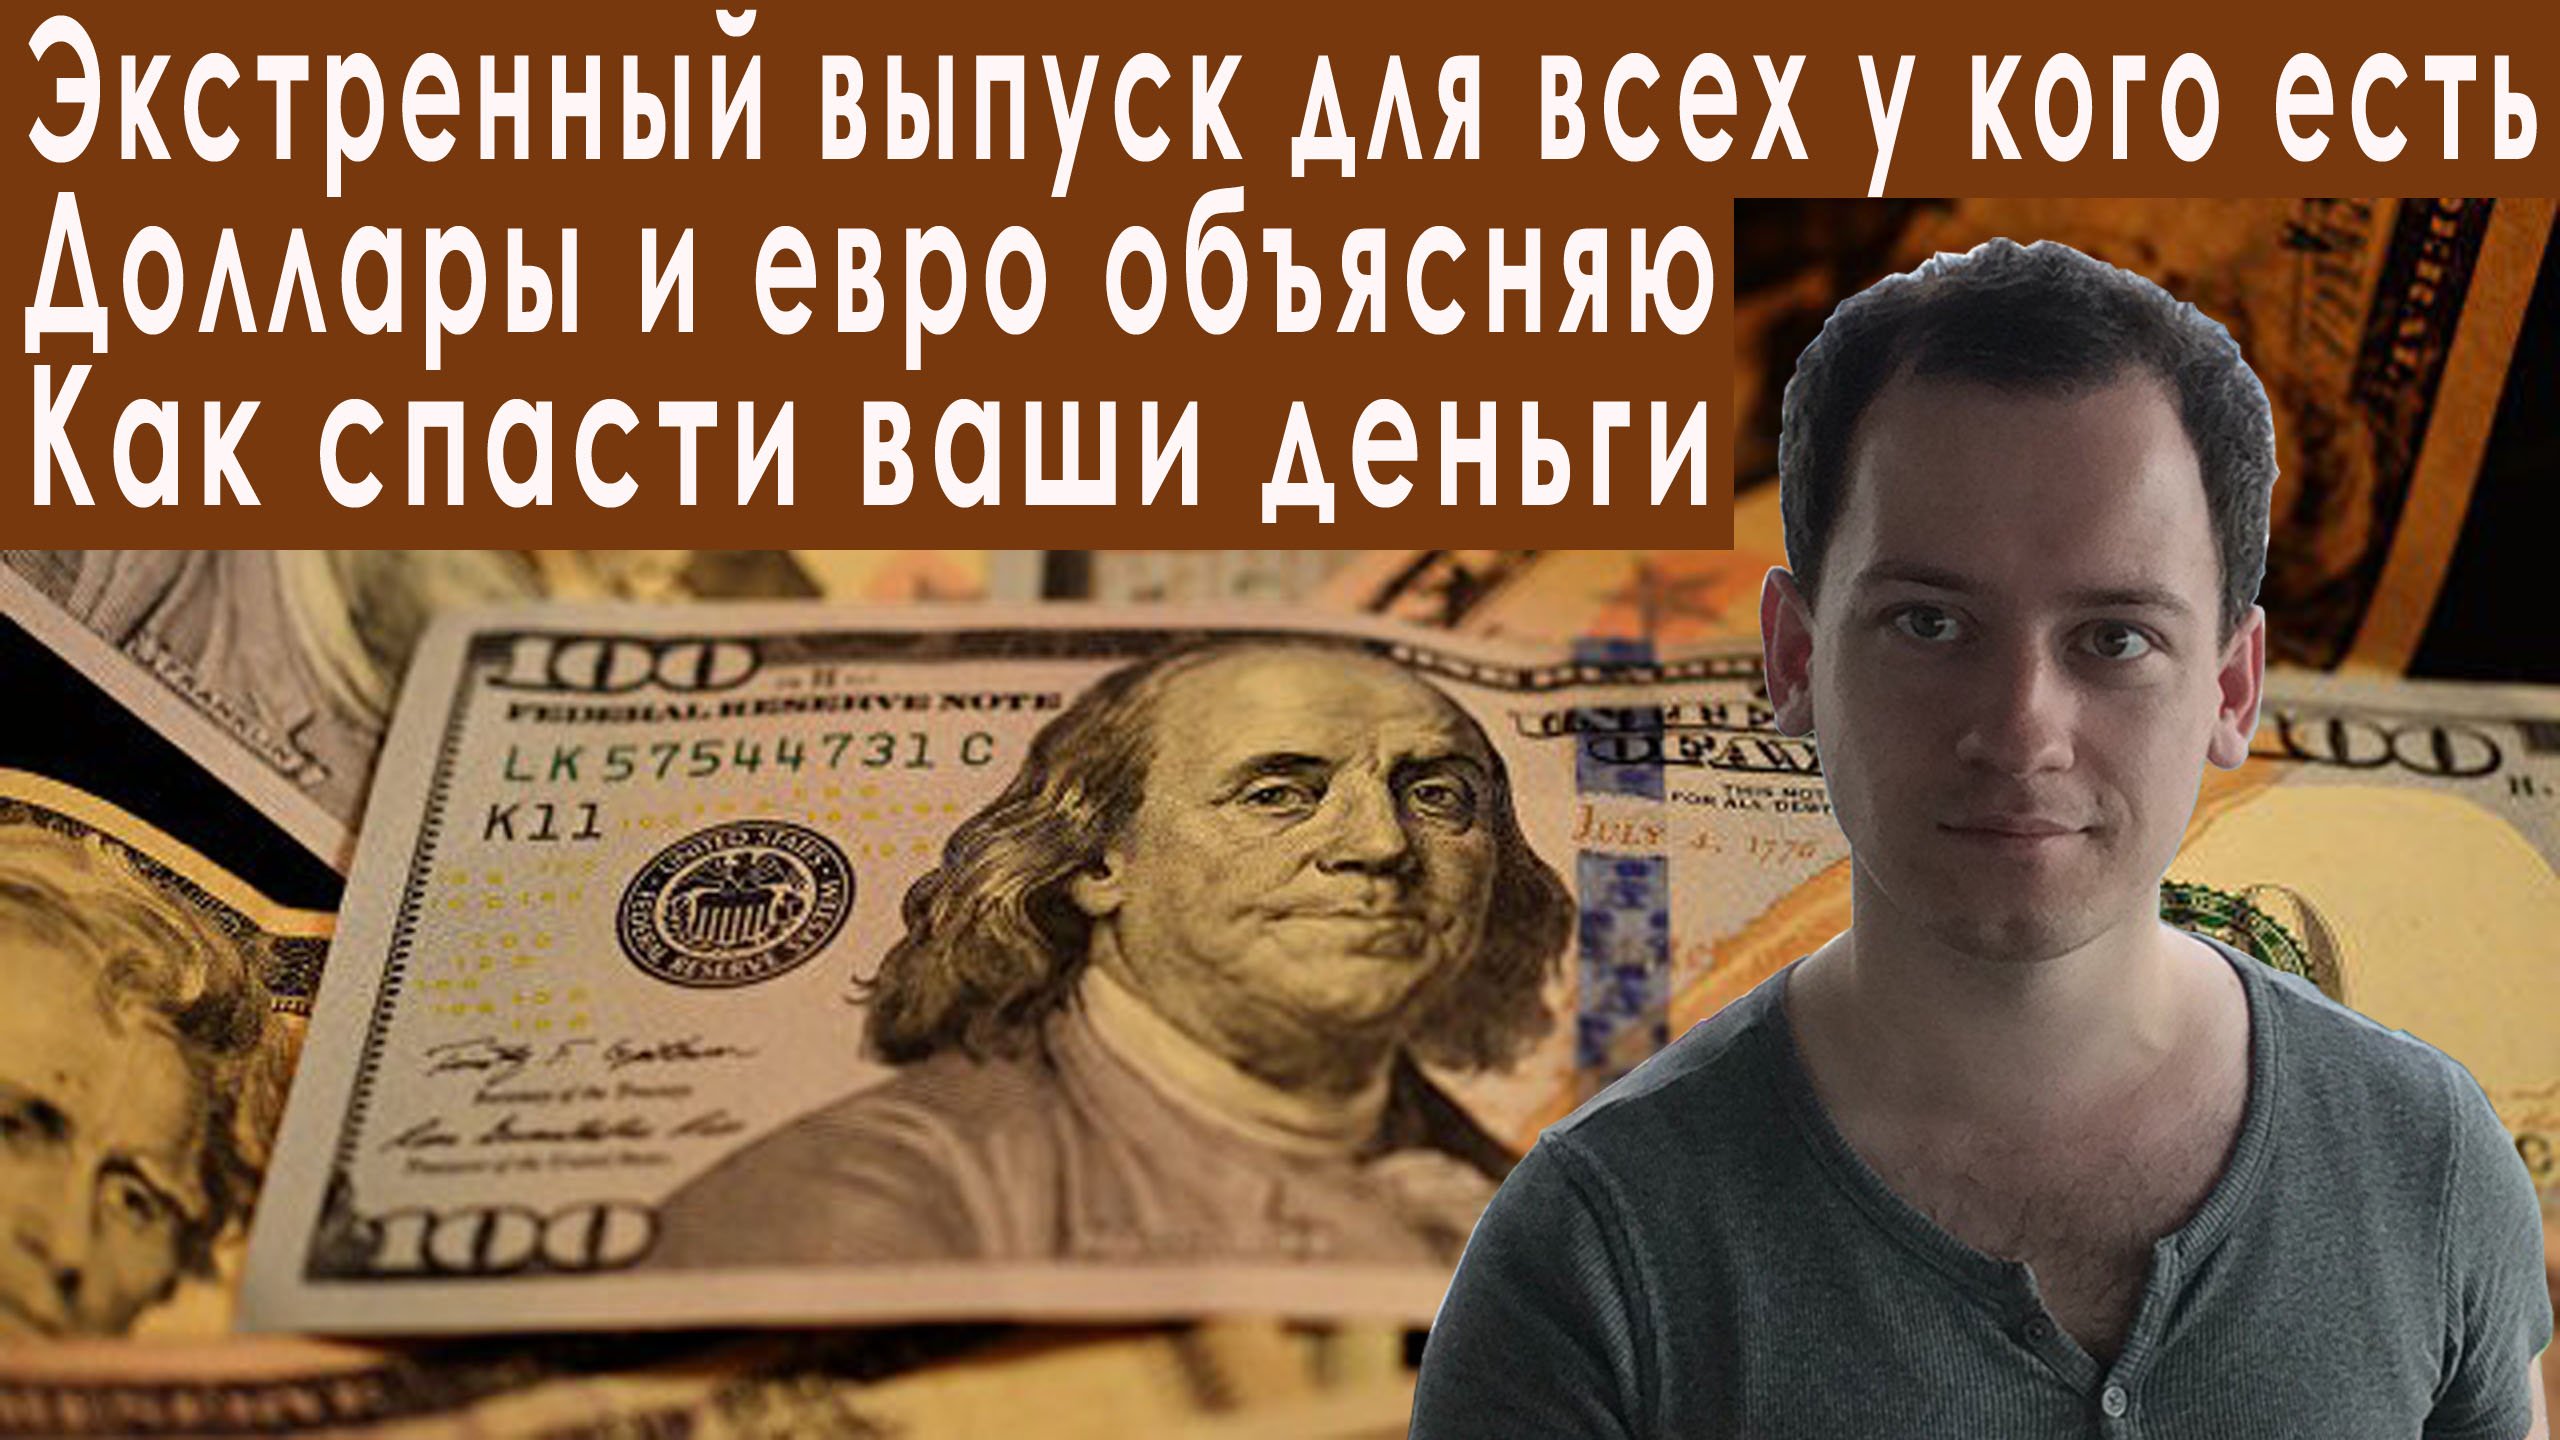 4500000 рублей в долларах